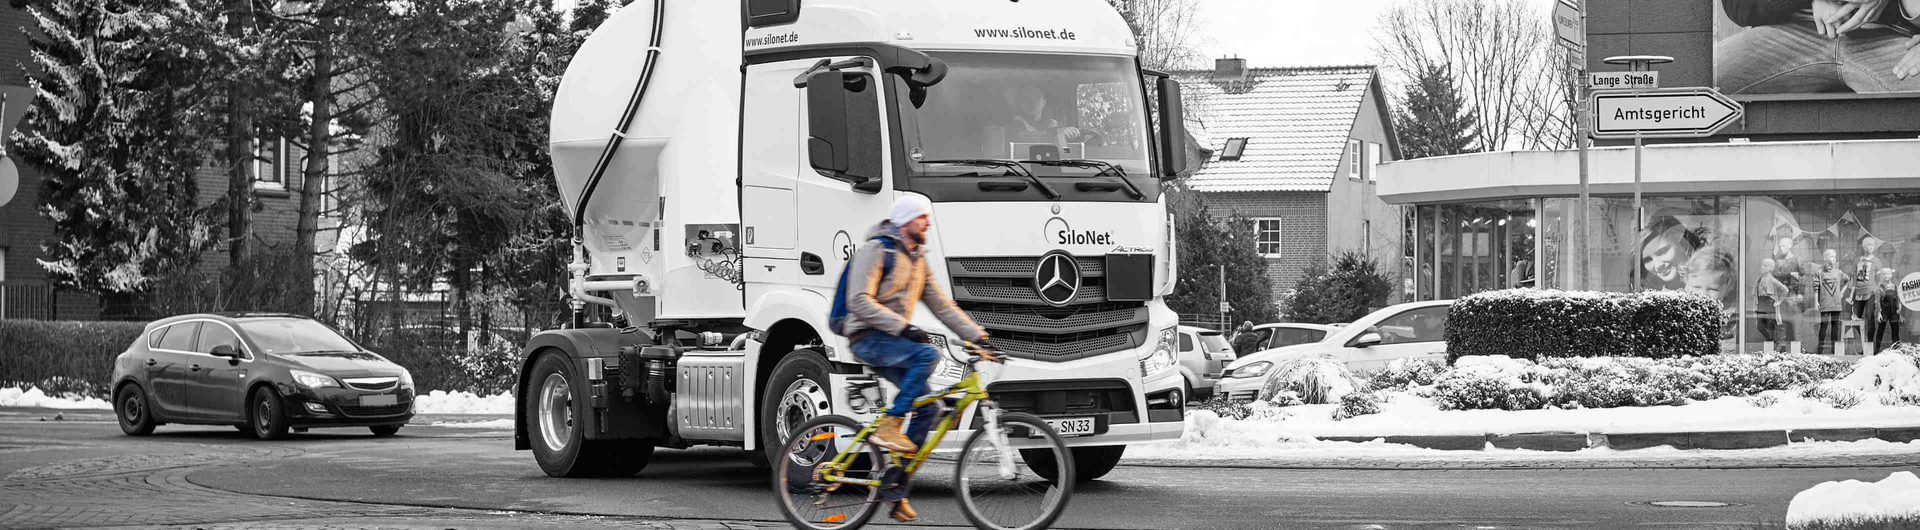 Mercedes-Benz LKW sind optional erhältlich mit dem Abbiege-Assistenten - dieser schützt Fahrradfahrer und Fußgänger vor Kollisionen und hilft Unfälle zu vermeiden